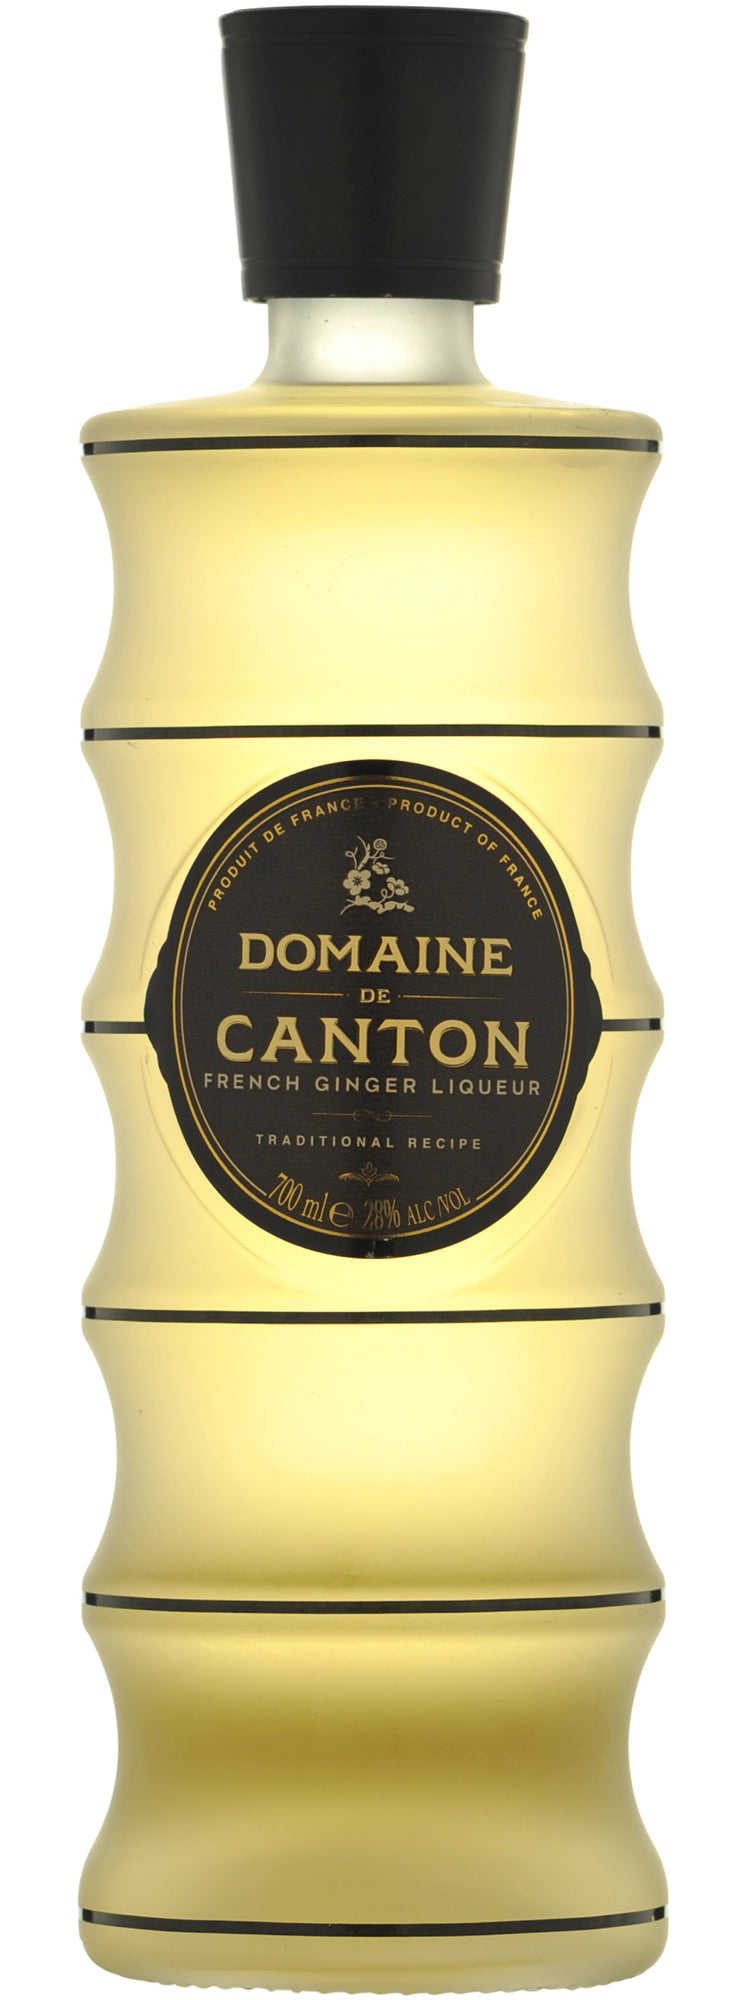 Domaine De Canton Ginger Liqueur